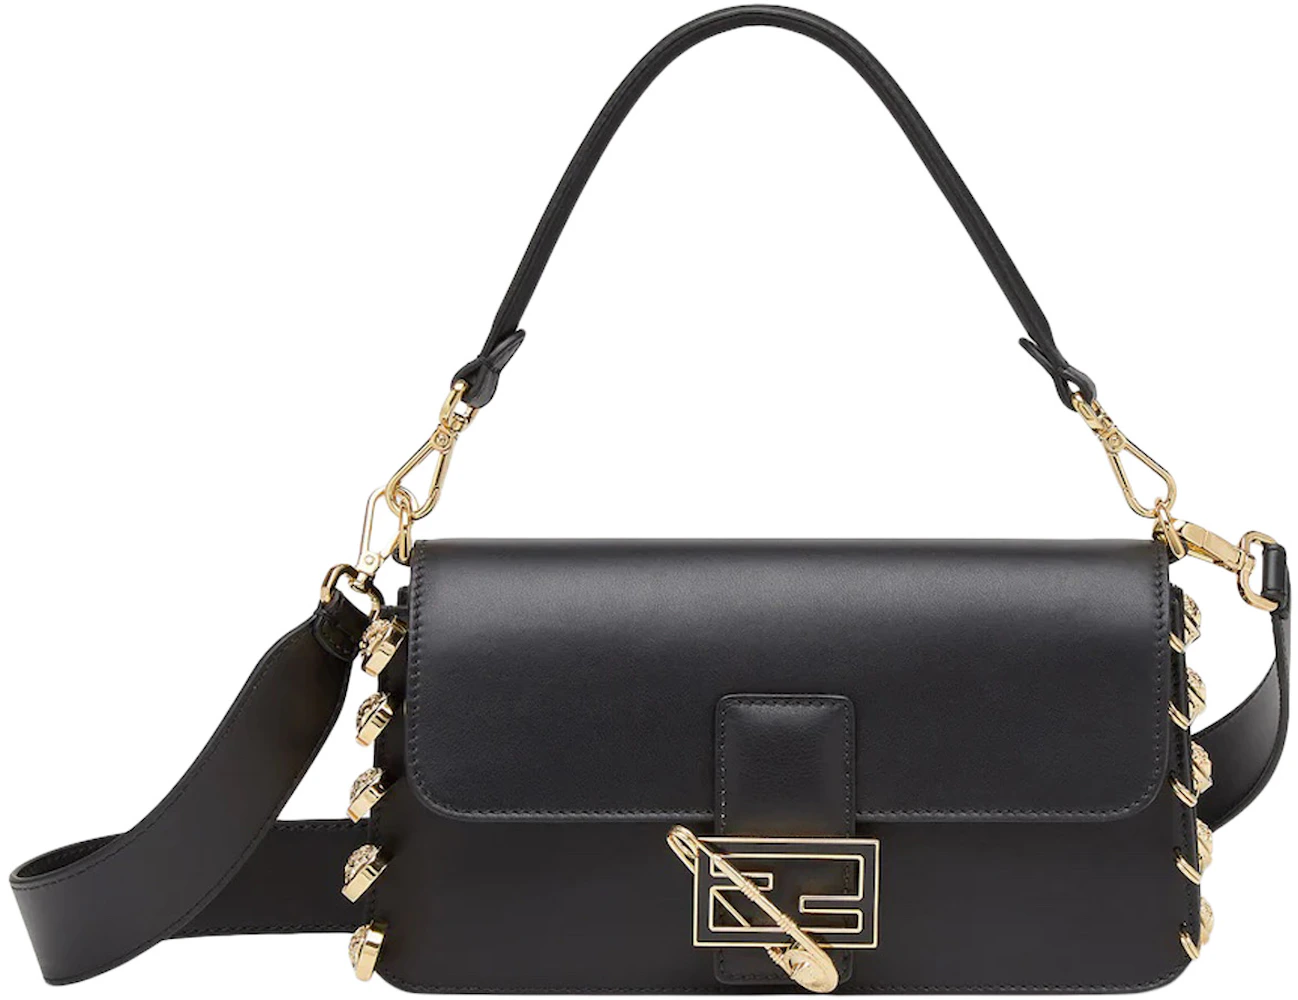 Fendi X Versace Fendace Gradient Crystal Baguette Shoulder Bag